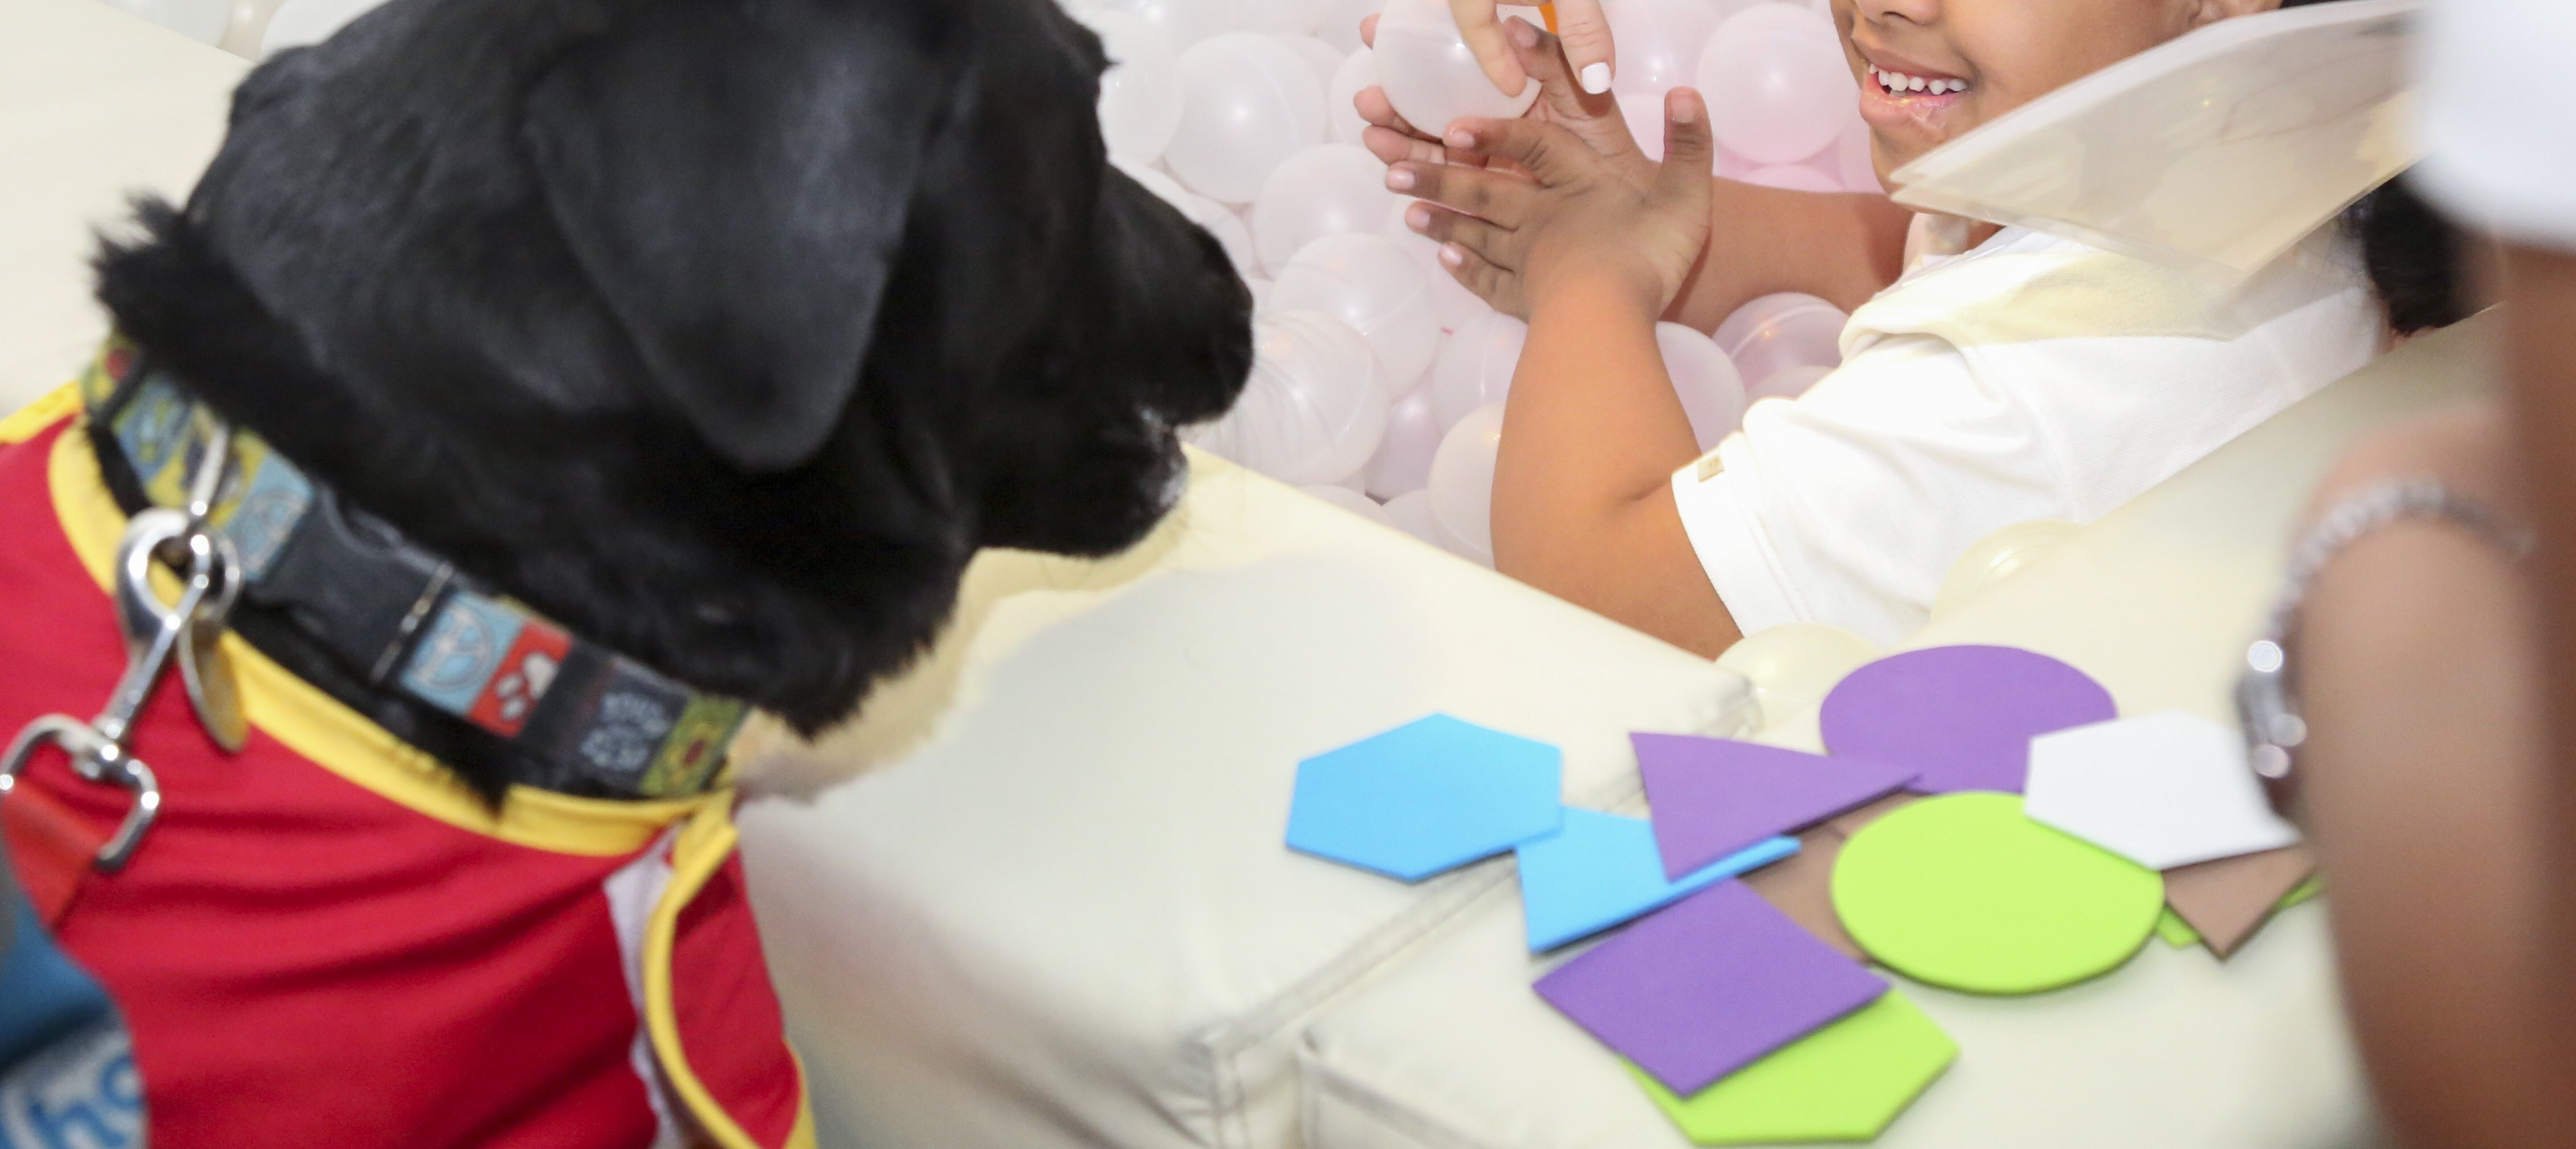 La terapia con perros para niños con parálisis cerebral muestra beneficios